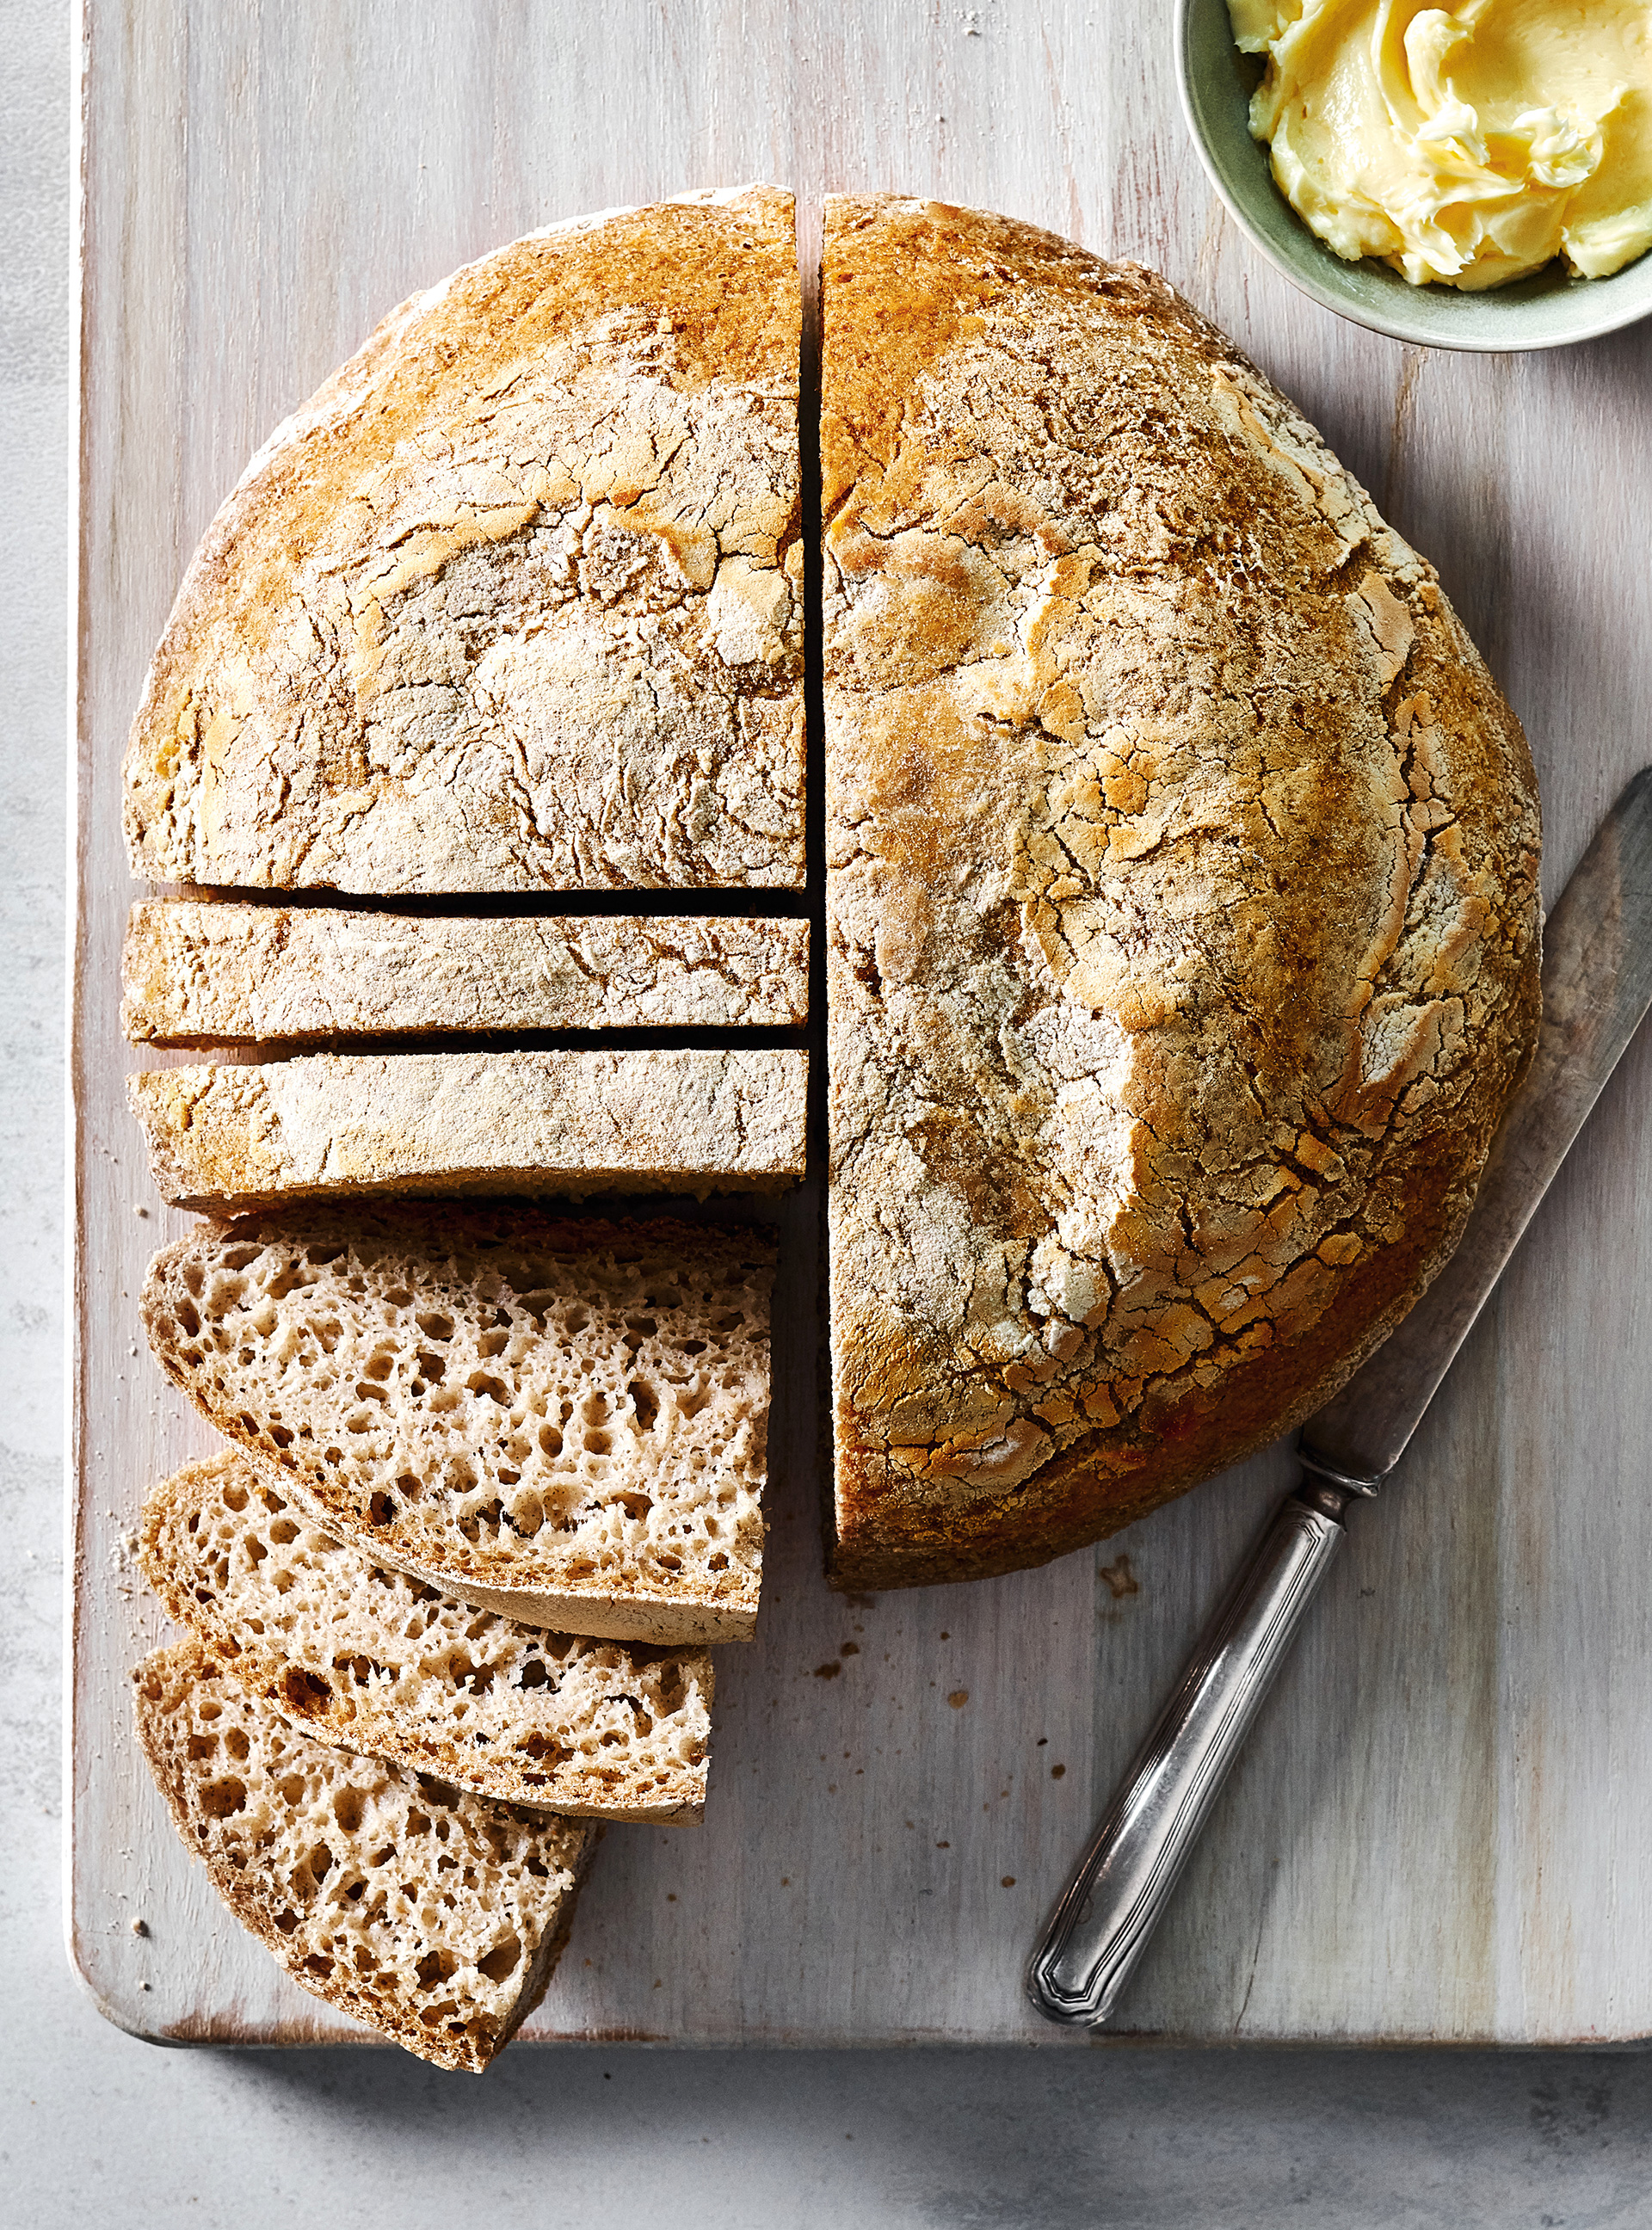 Recette de pain sans gluten : une alternative savoureuse - CFA Espace  Concours